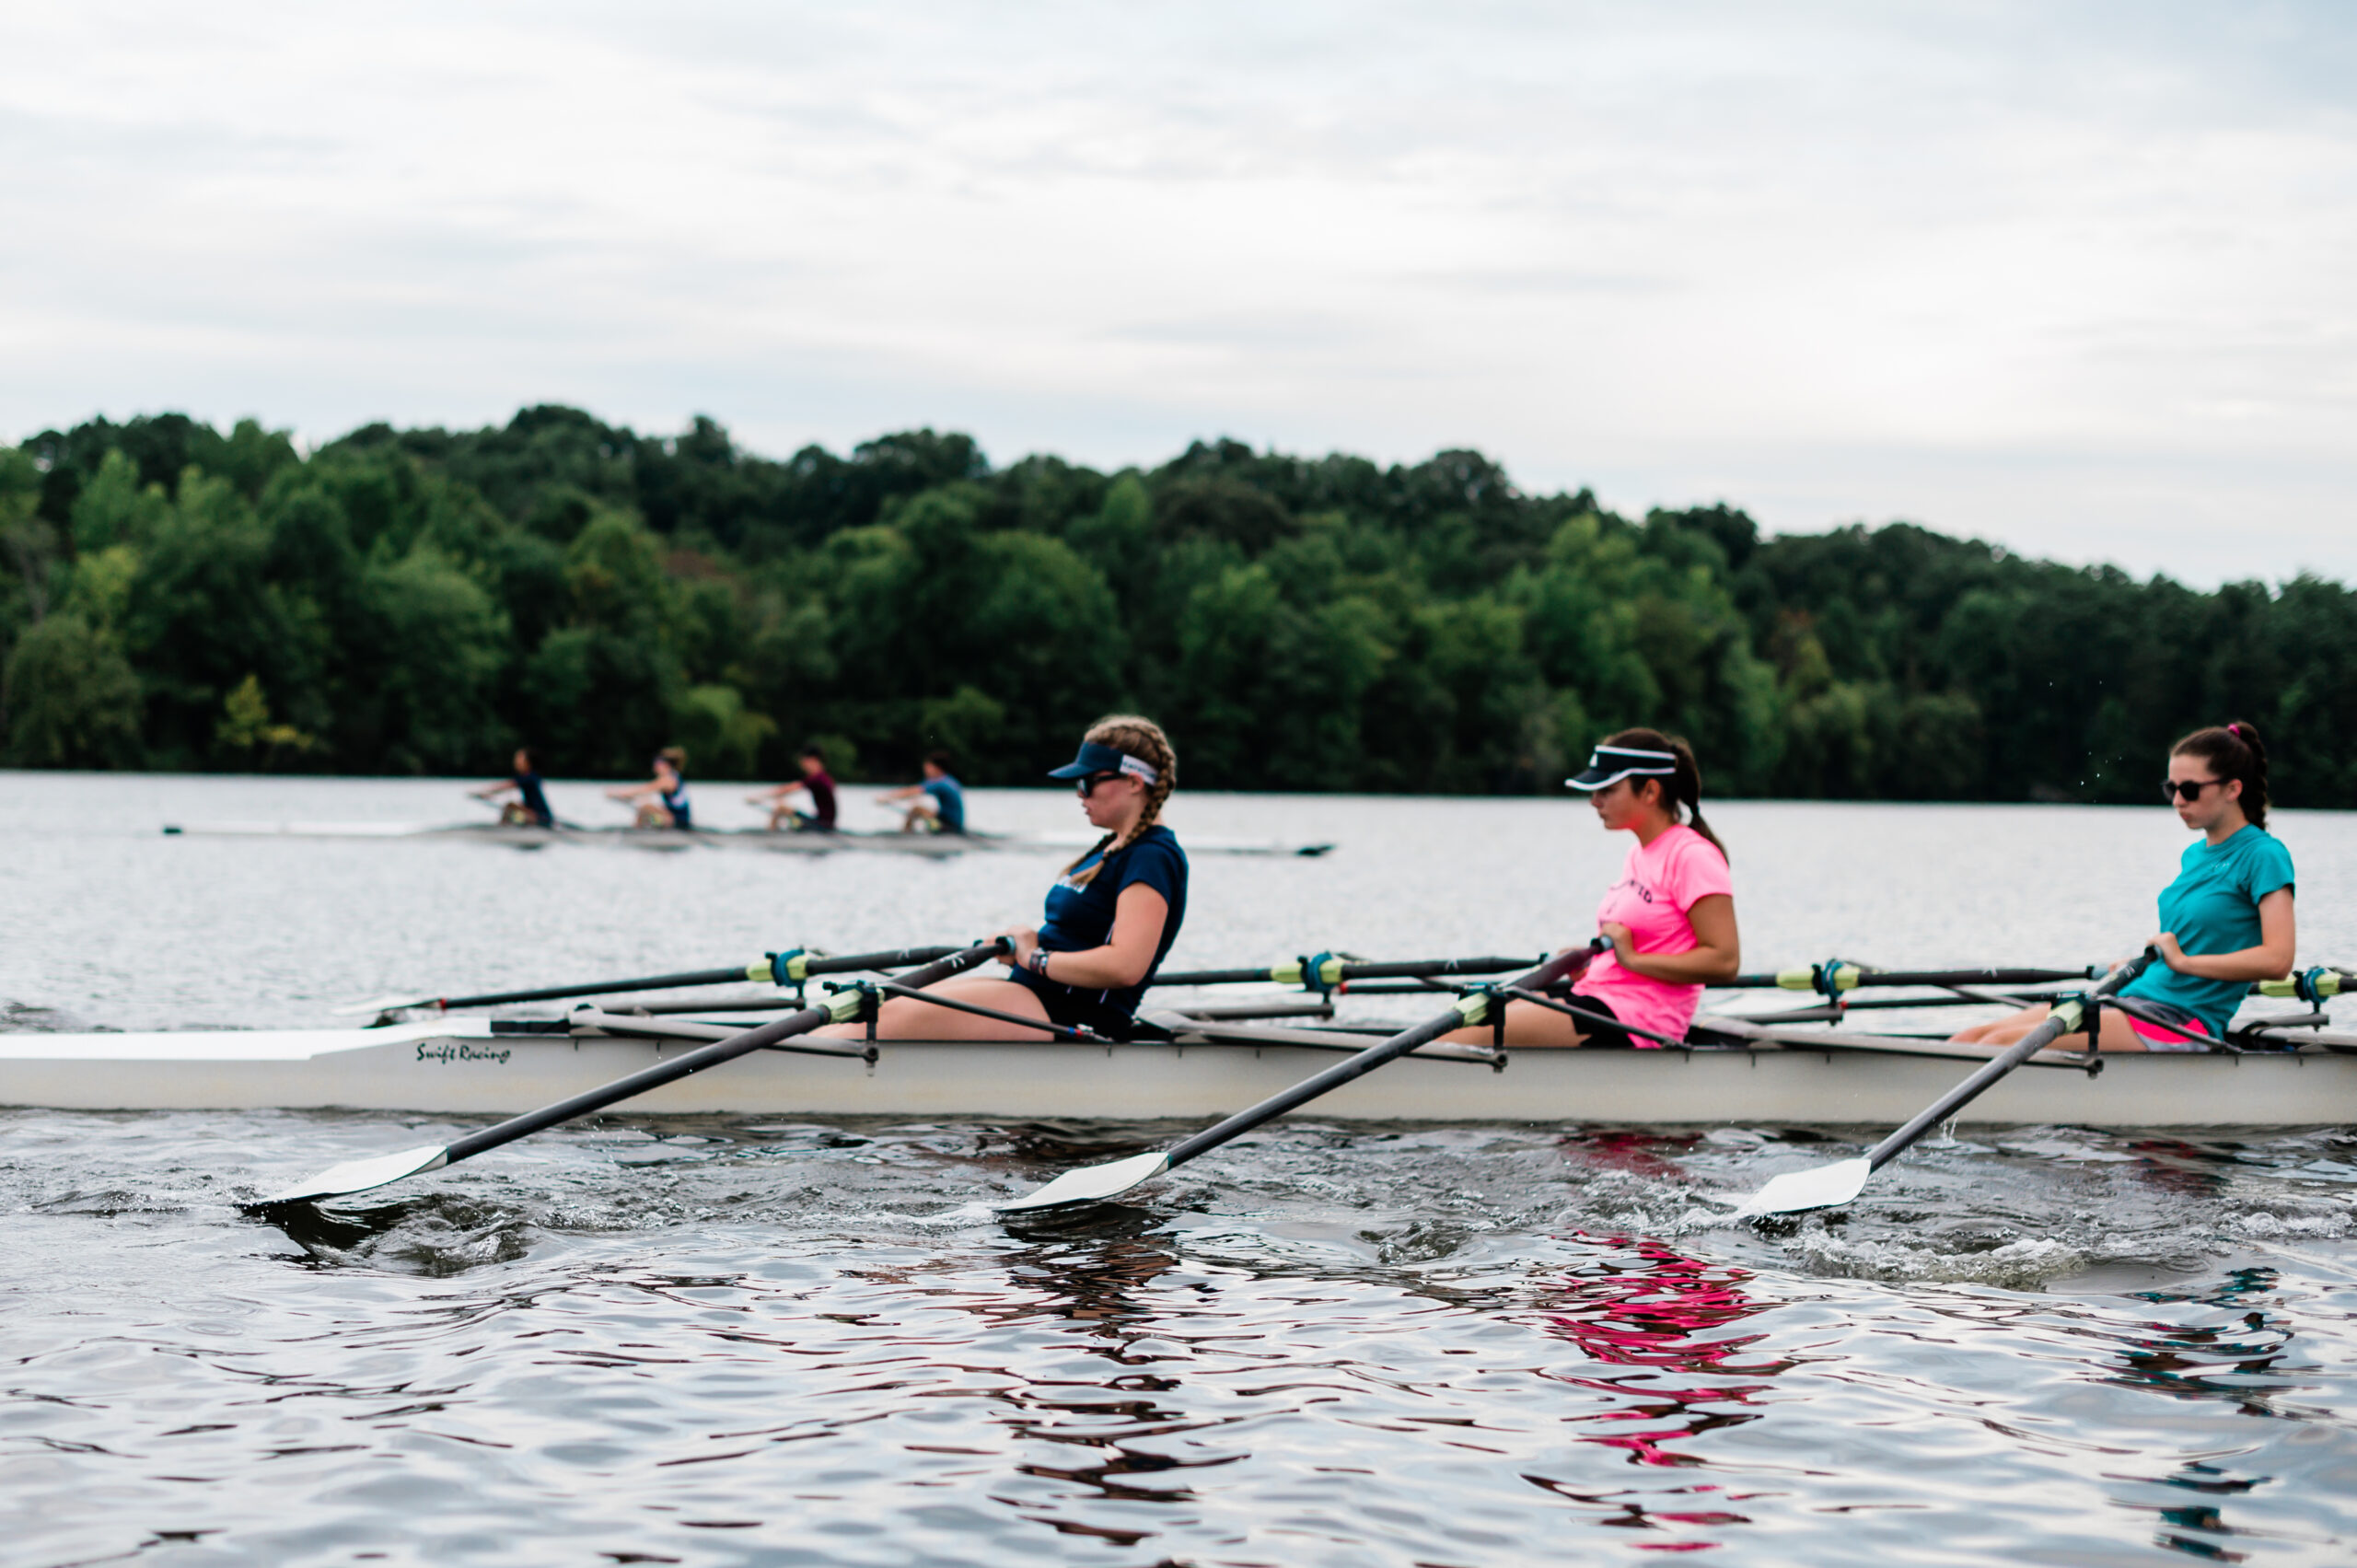 Teams row across Oak Hollow Lake.